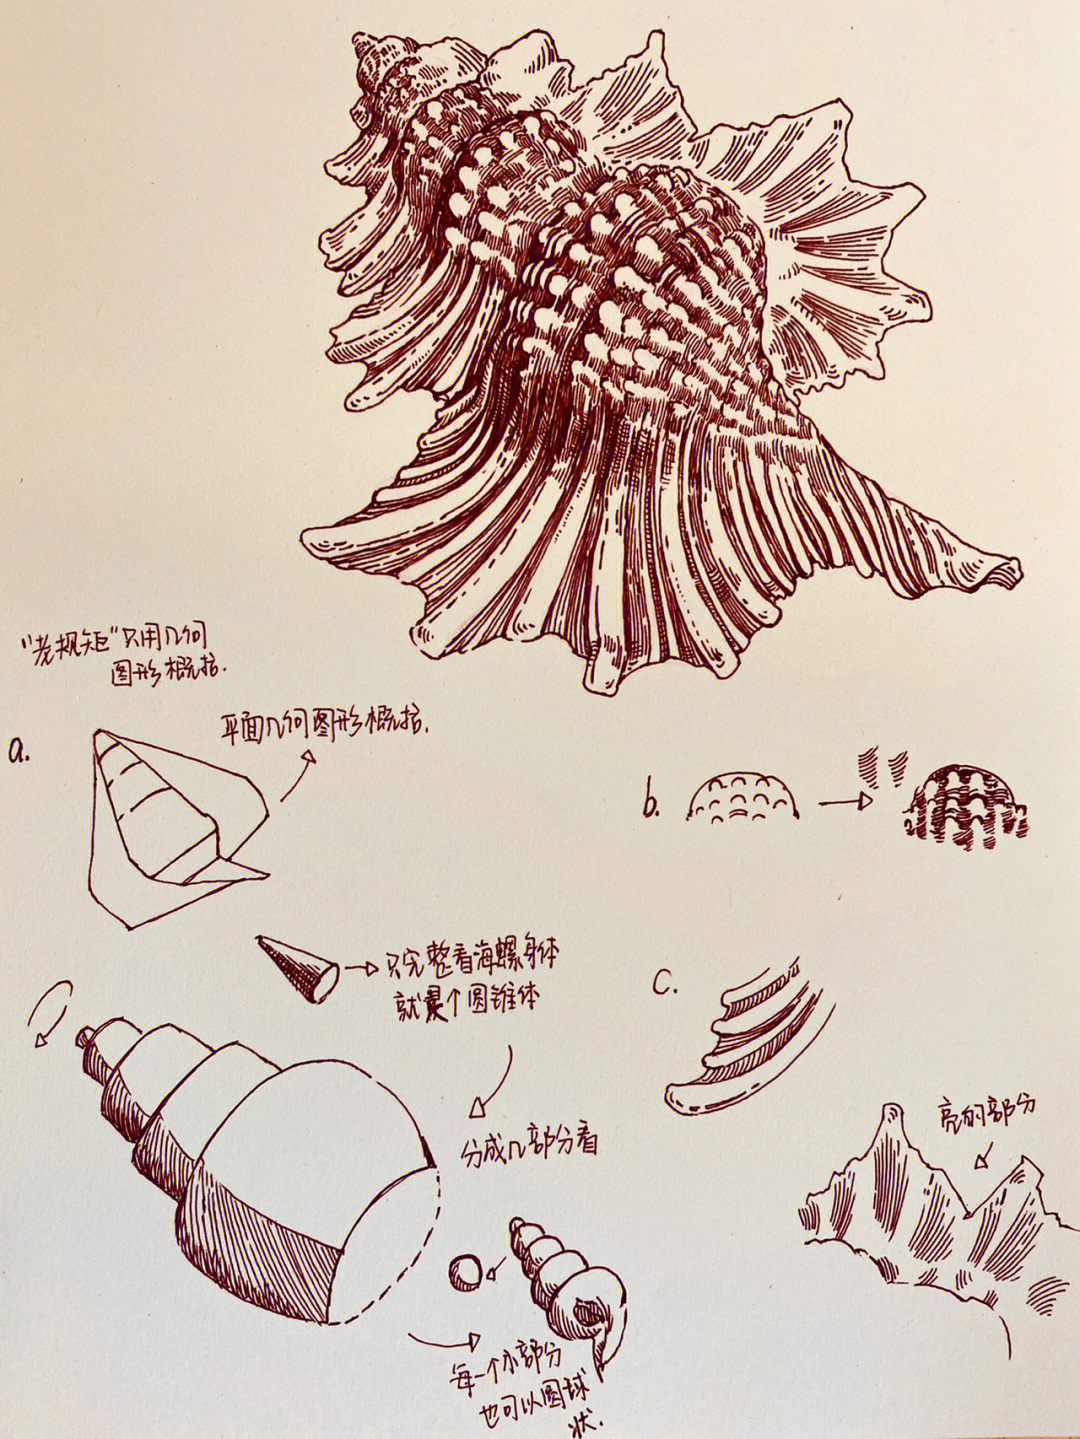 速写分享海螺结构多图可参考